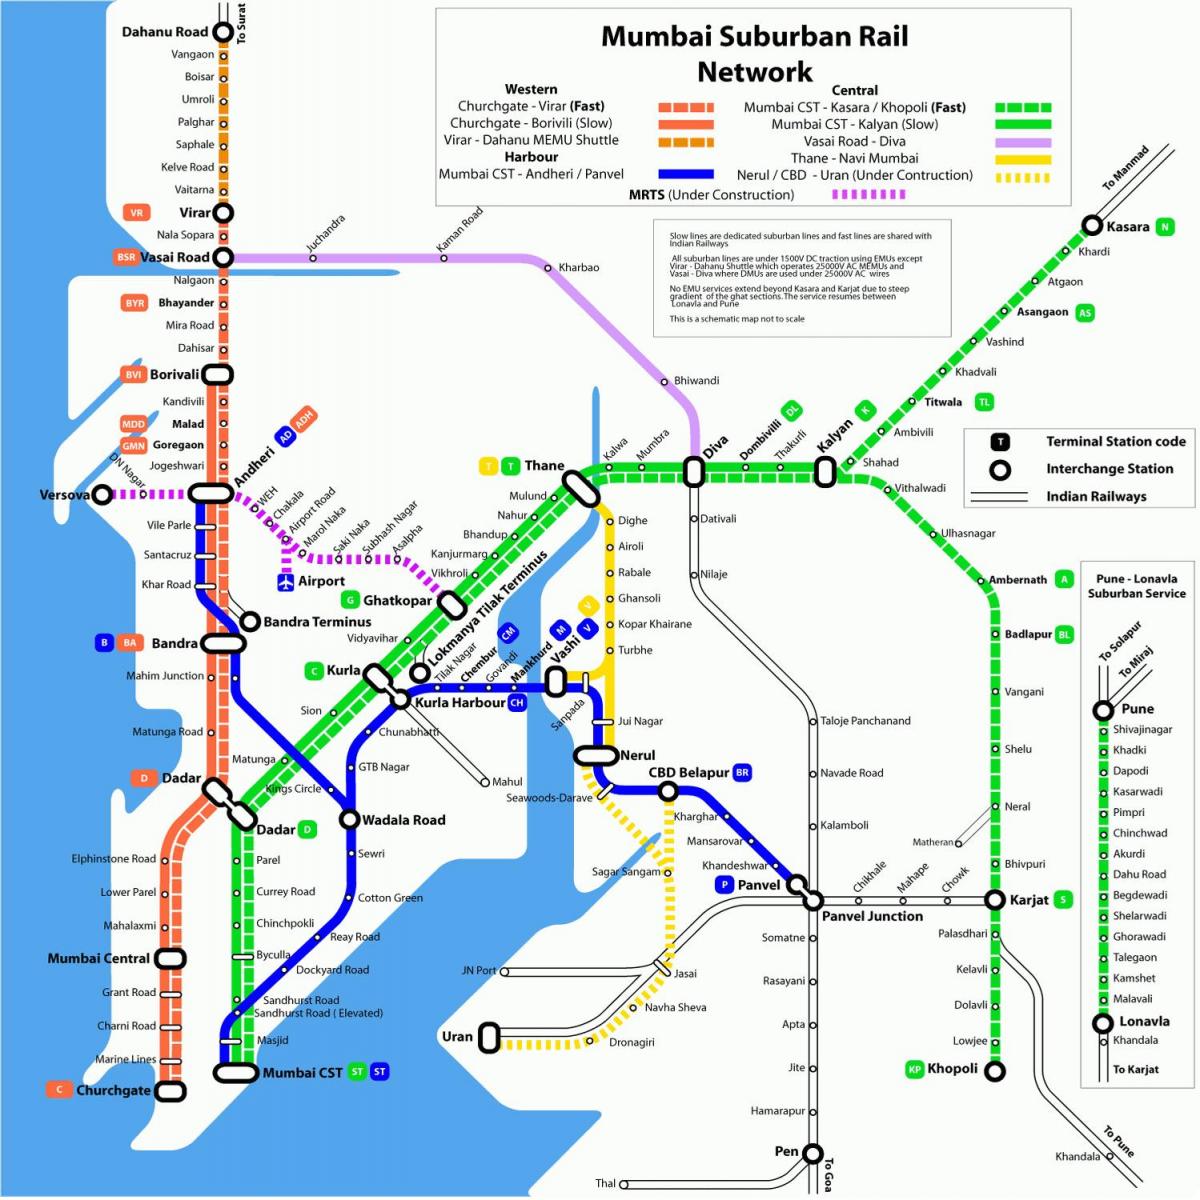 Mumbajus vakarų geležinkelio žemėlapį